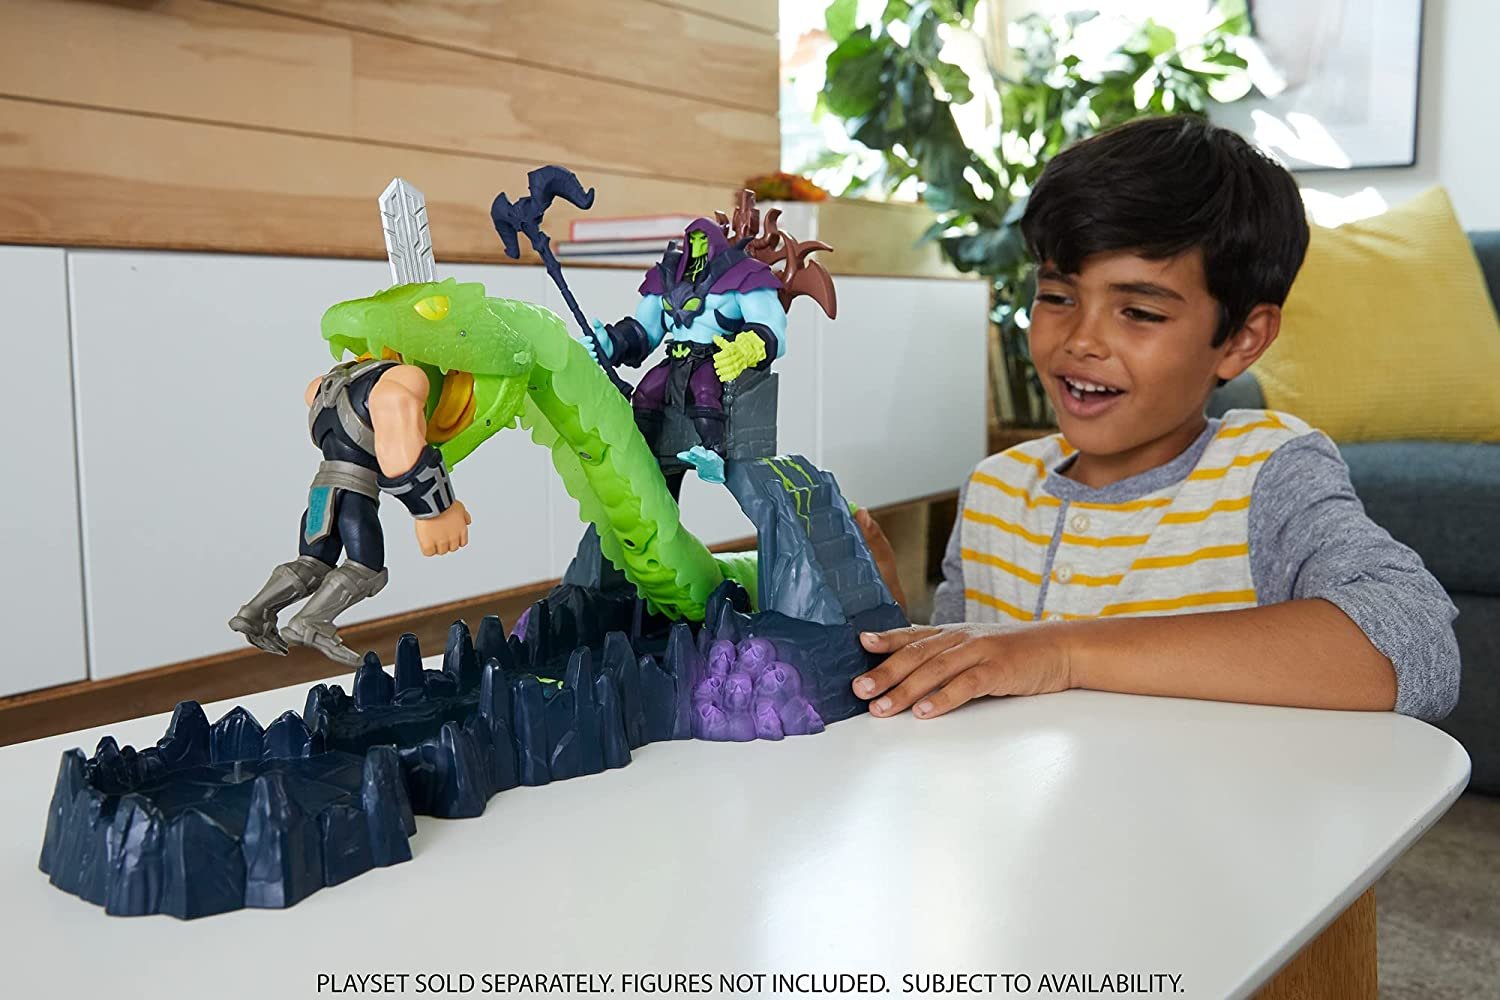 Cenário Ataque da Serpente He-Man and The Masters of The Universe Mattel -  Fátima Criança